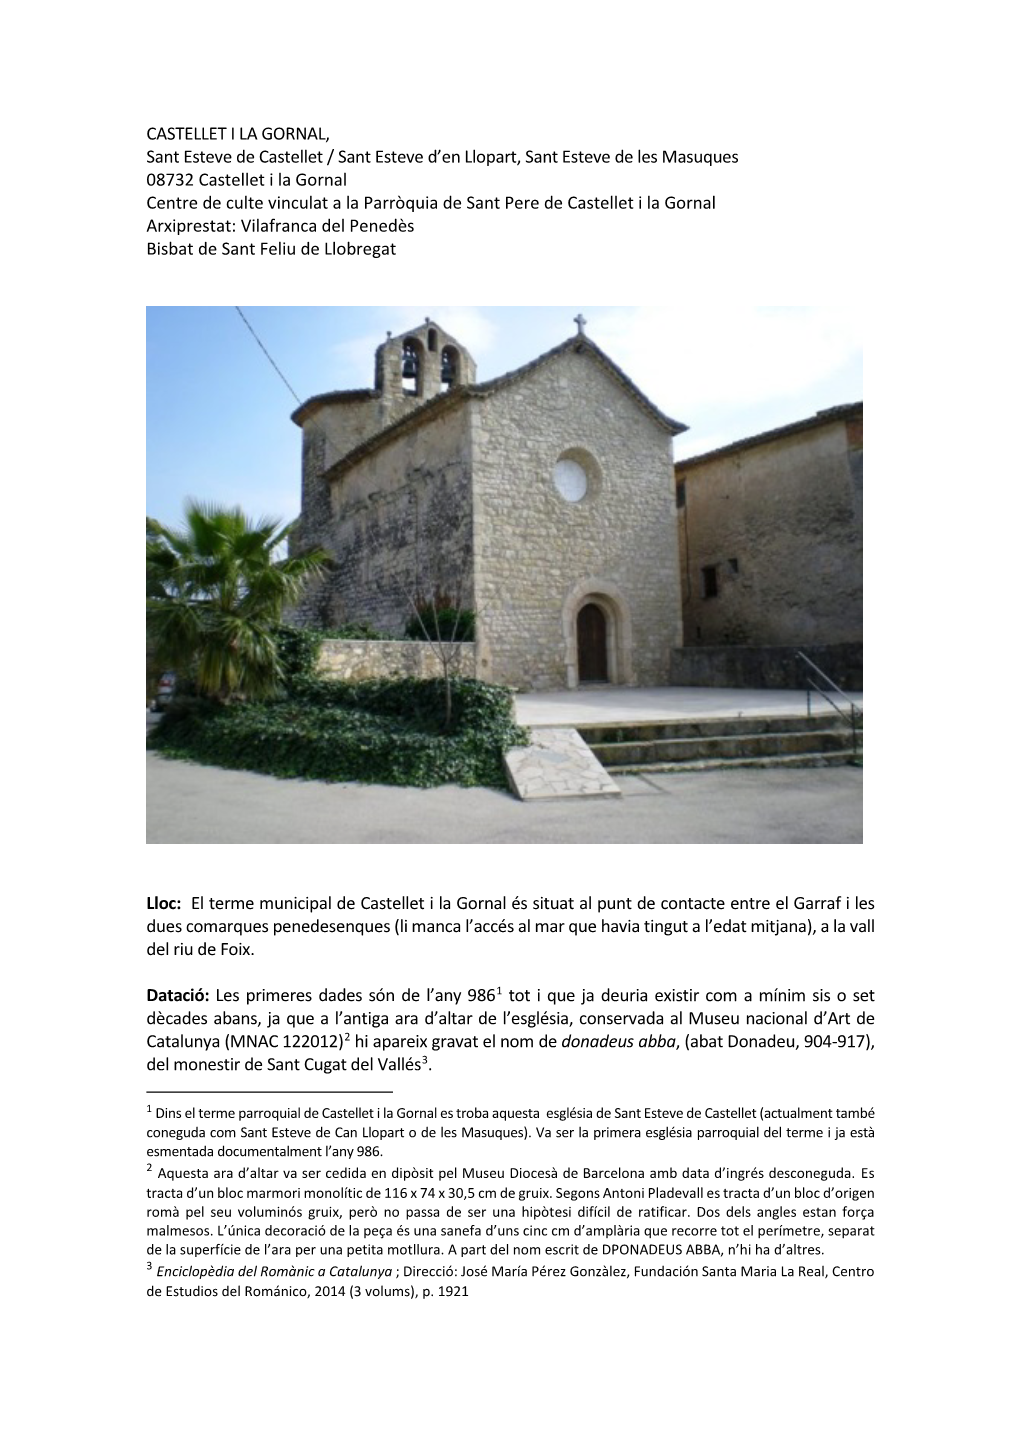 CASTELLET I LA GORNAL, Sant Esteve De Castellet / Sant Esteve D'en Llopart, Sant Esteve De Les Masuques 08732 Castellet I La